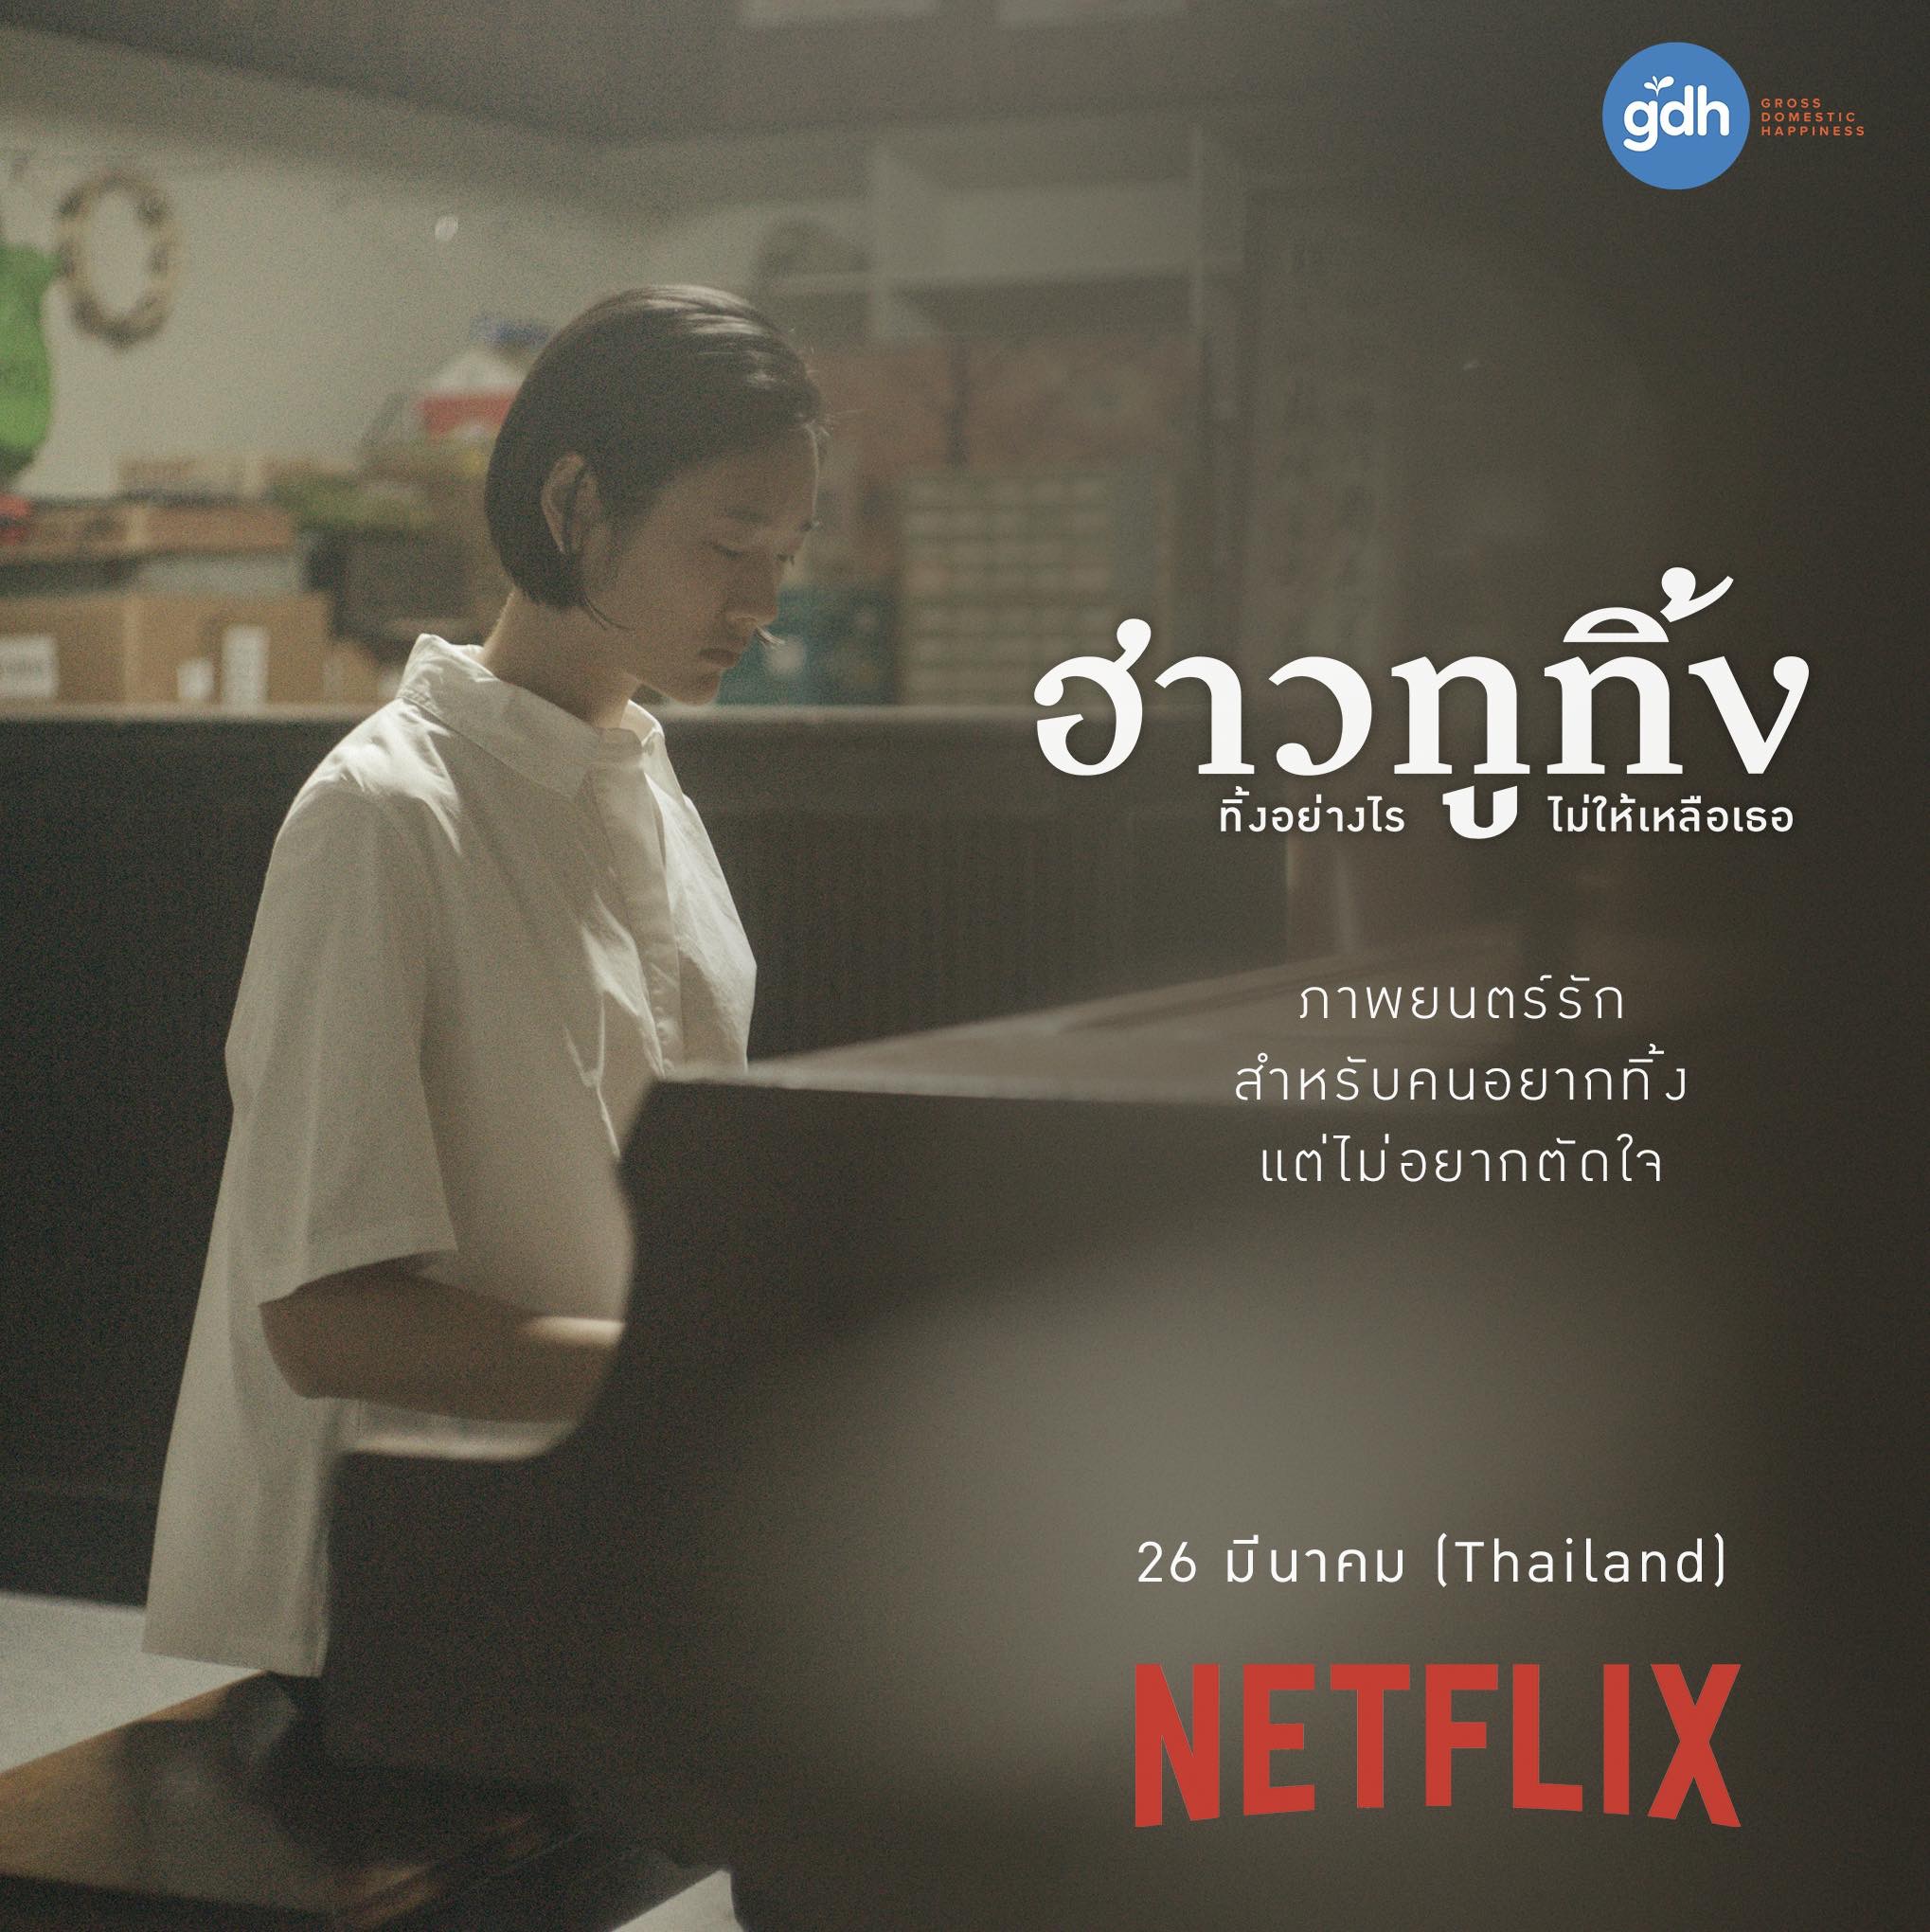 Netflix] ฮาวทูทิ้ง..ทิ้งอย่างไรไม่ให้เหลือเธอ (2019) : ลืม (ทิ้ง) บางอย่าง  เพื่อเดินไปข้างหน้าต่อไป - Pantip